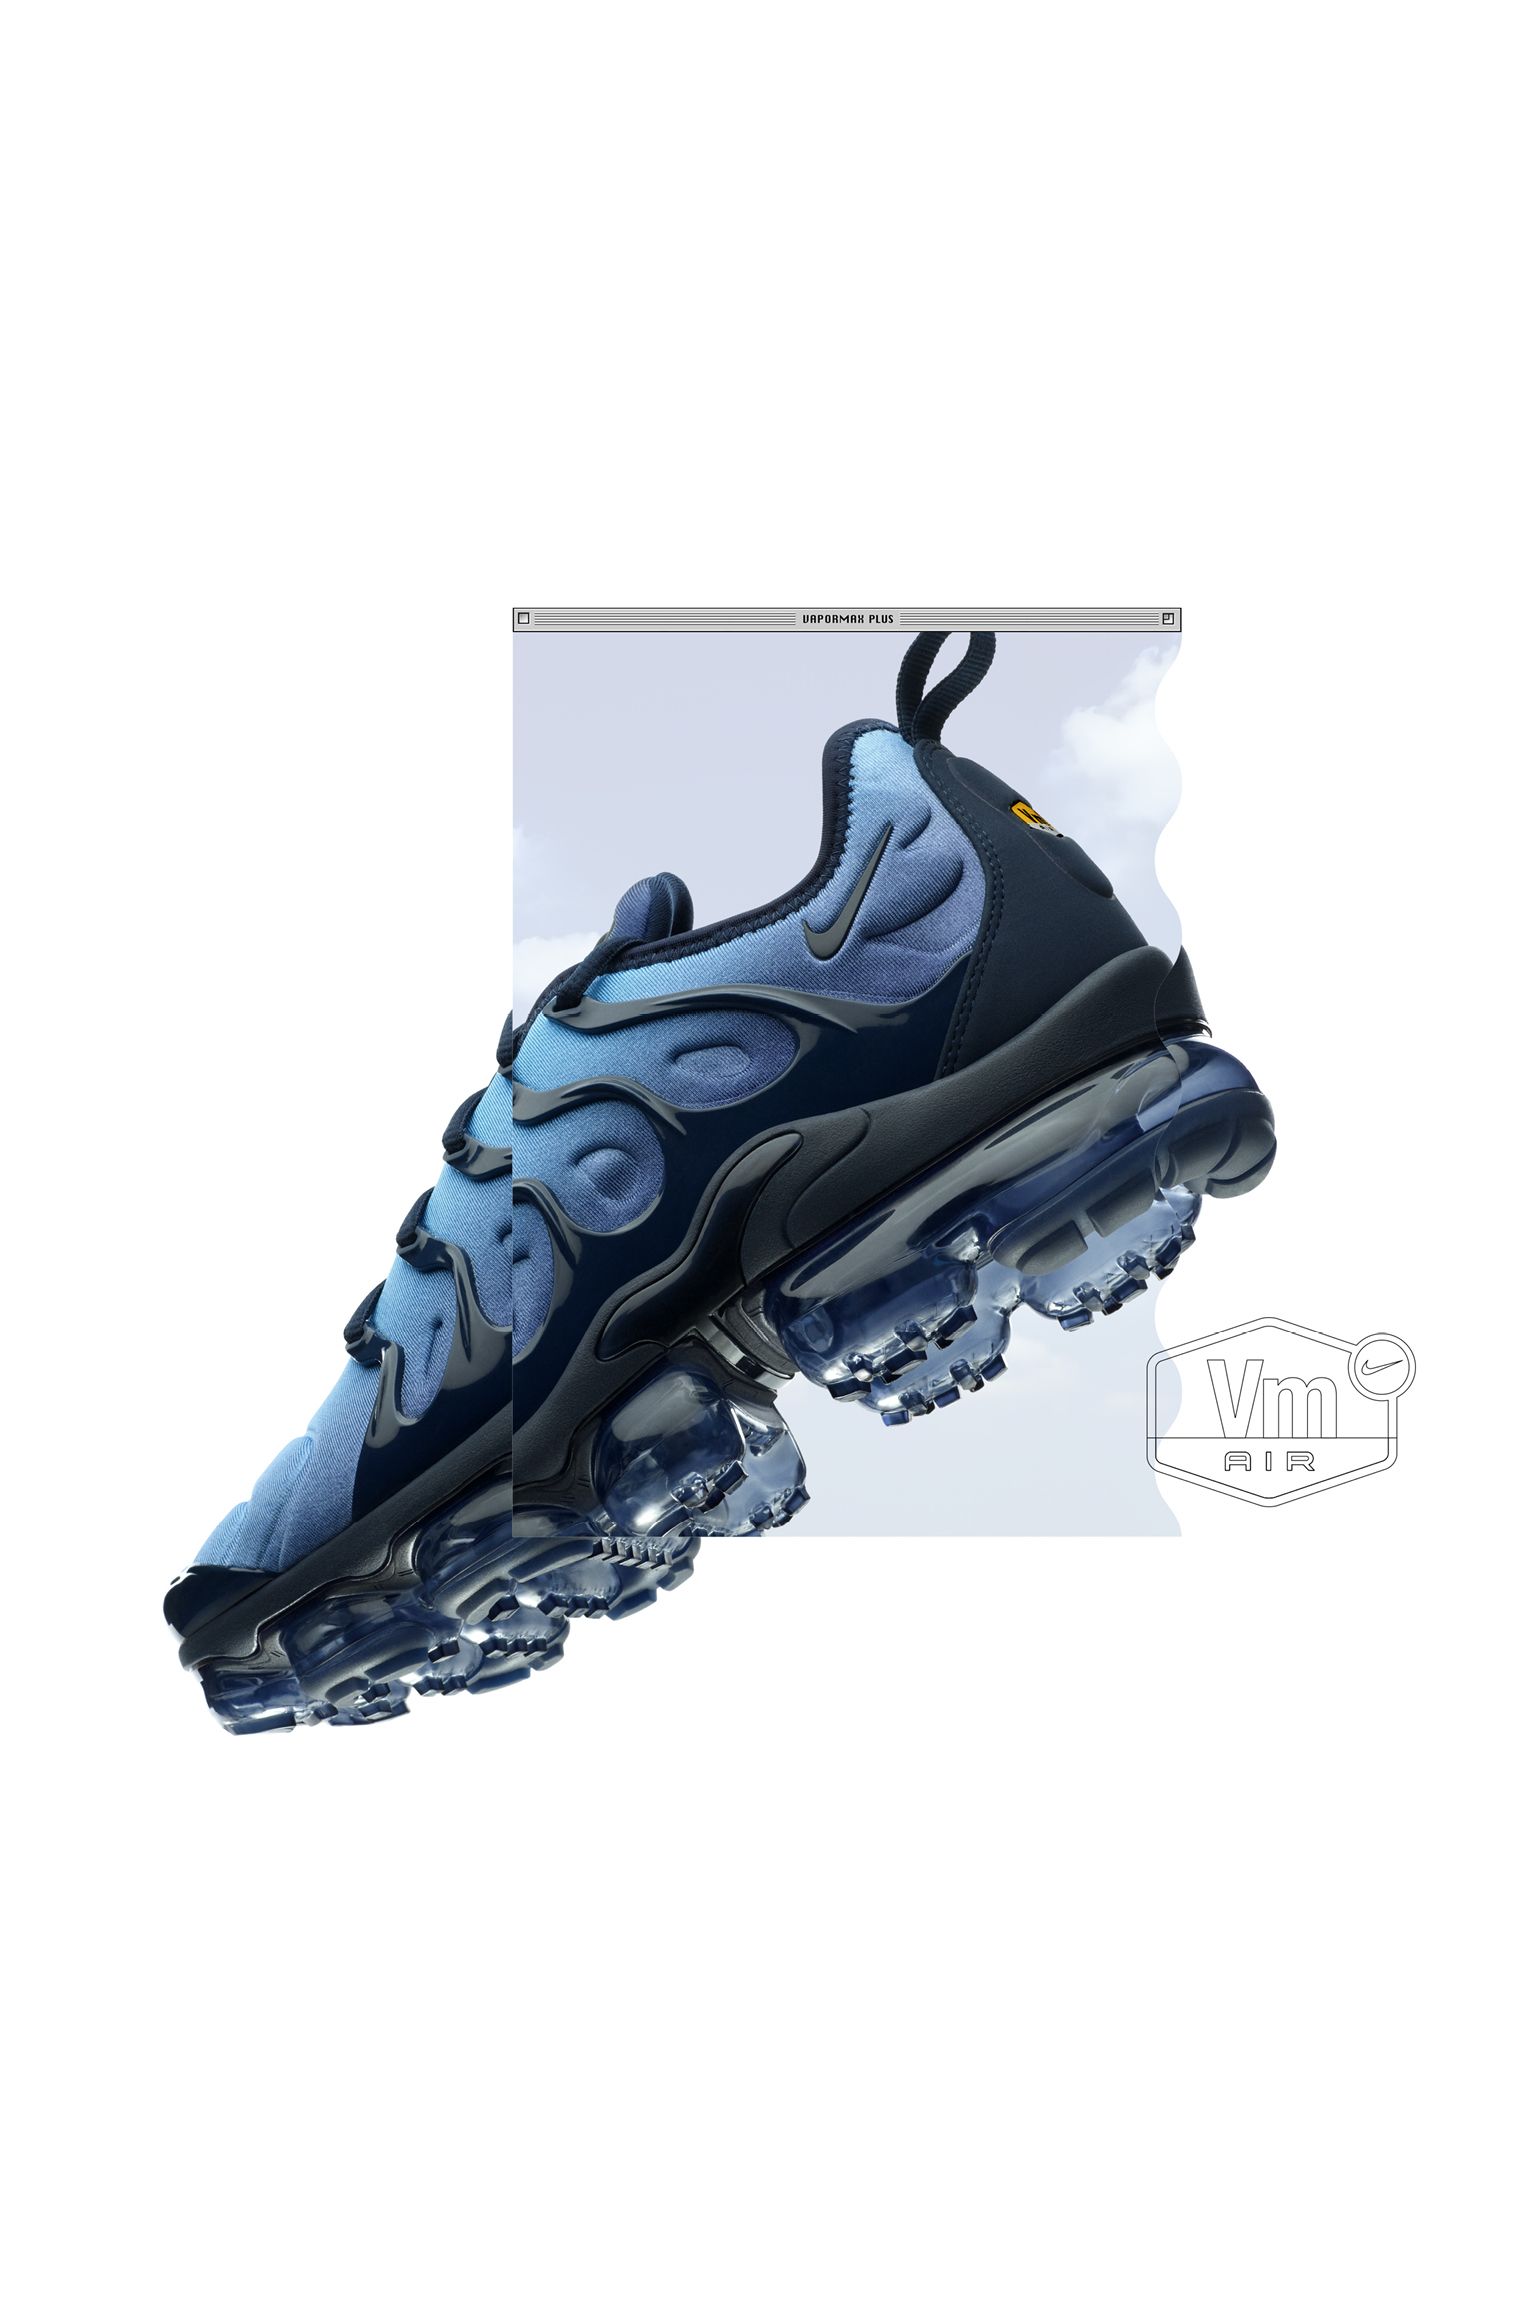 جيب يوكن Nike Air Vapormax Plus 'Obsidian & Photo Blue' Release Date. Nike ... جيب يوكن